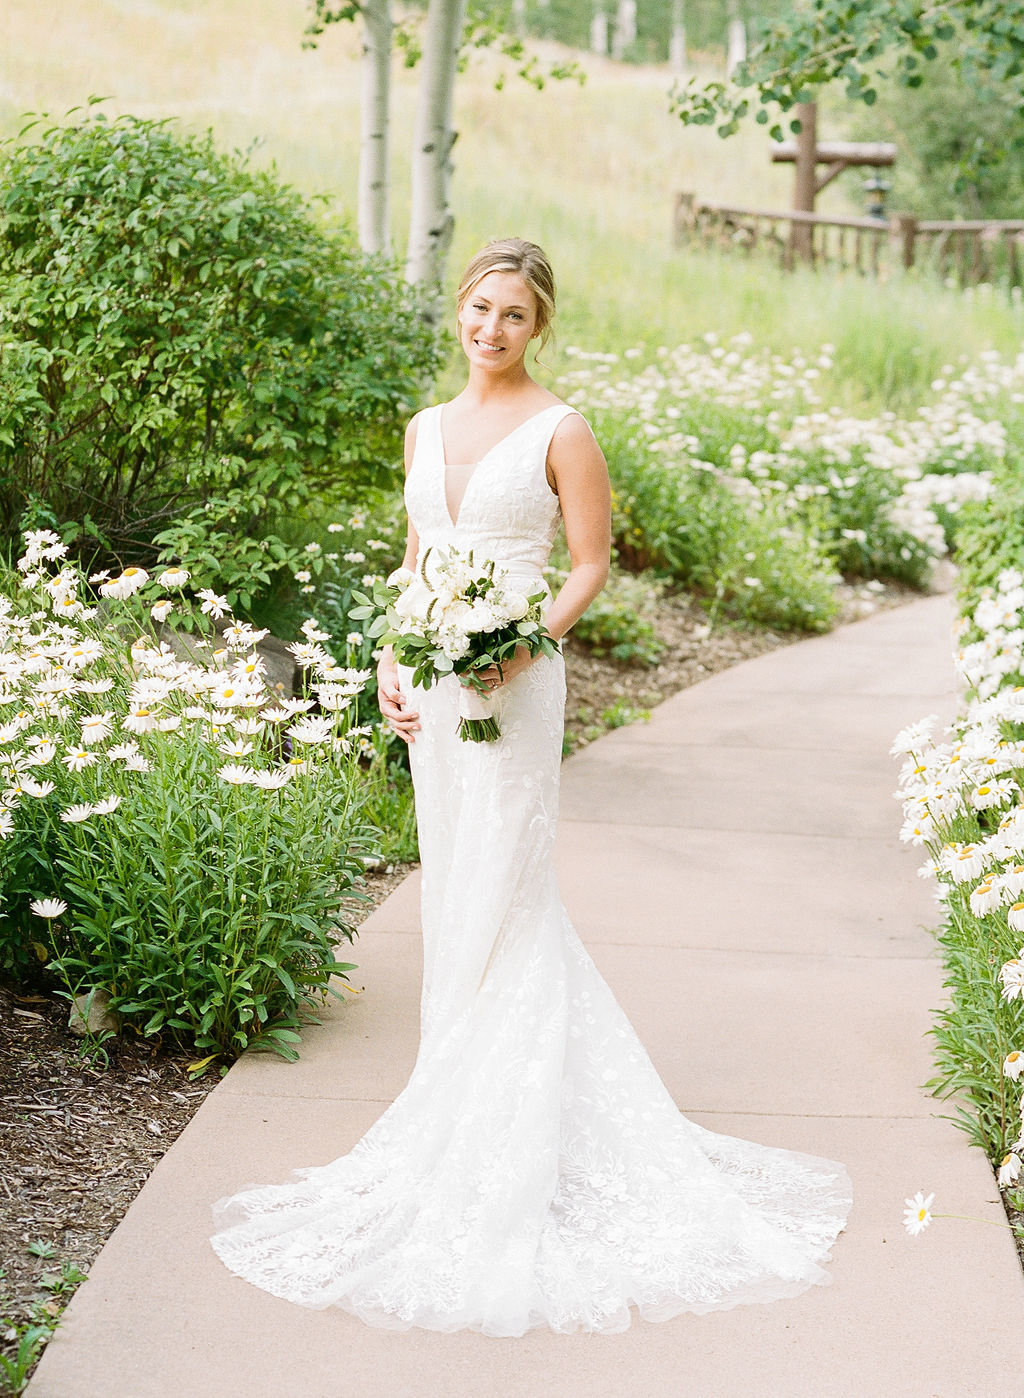 claire-will-wedding-bride-groom-38